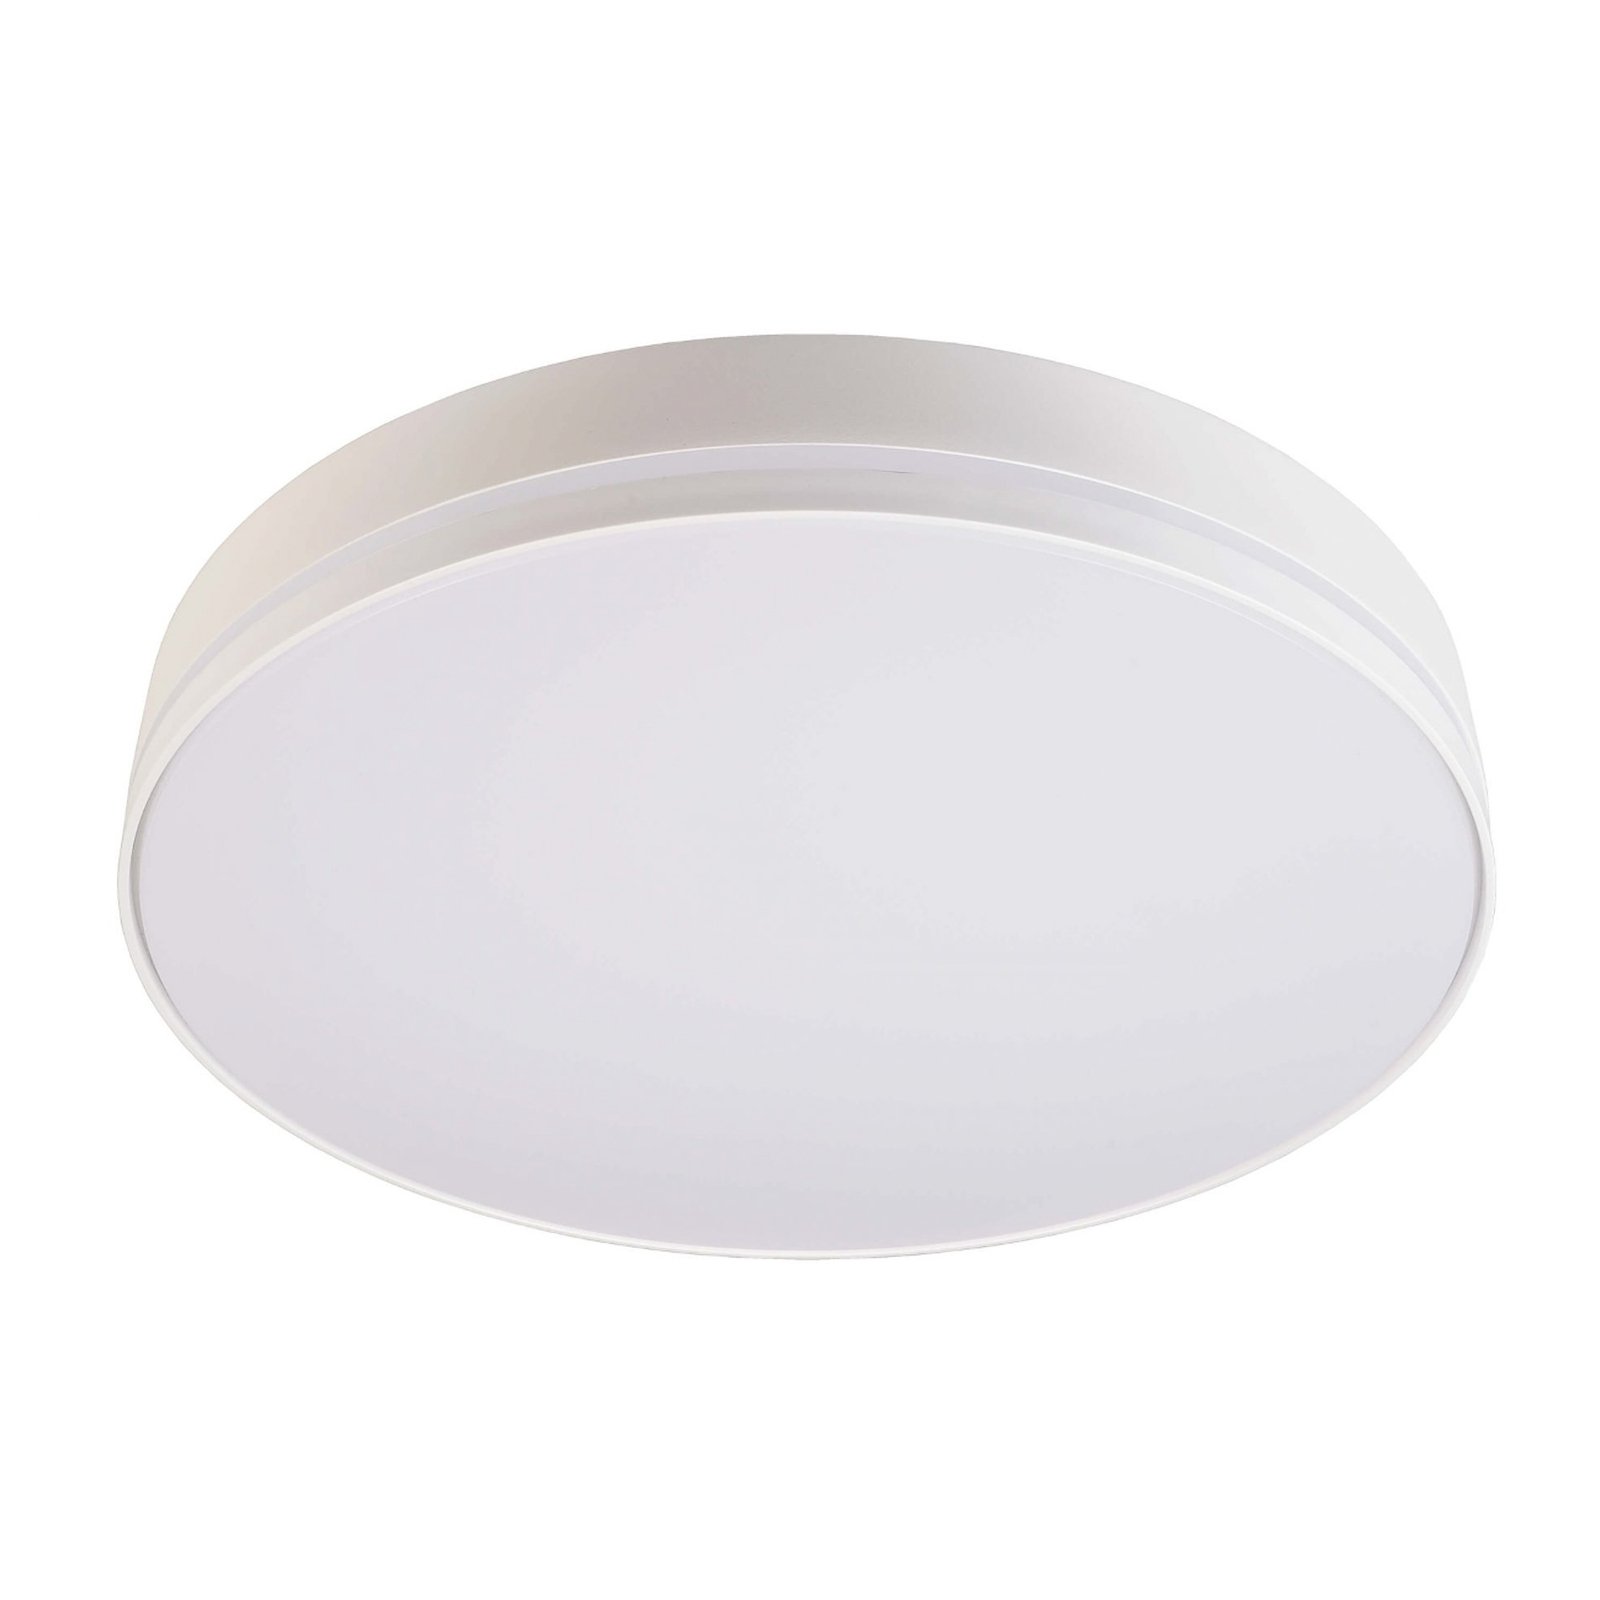 Subra LED sensor ceiling light IP54, 3,000 K